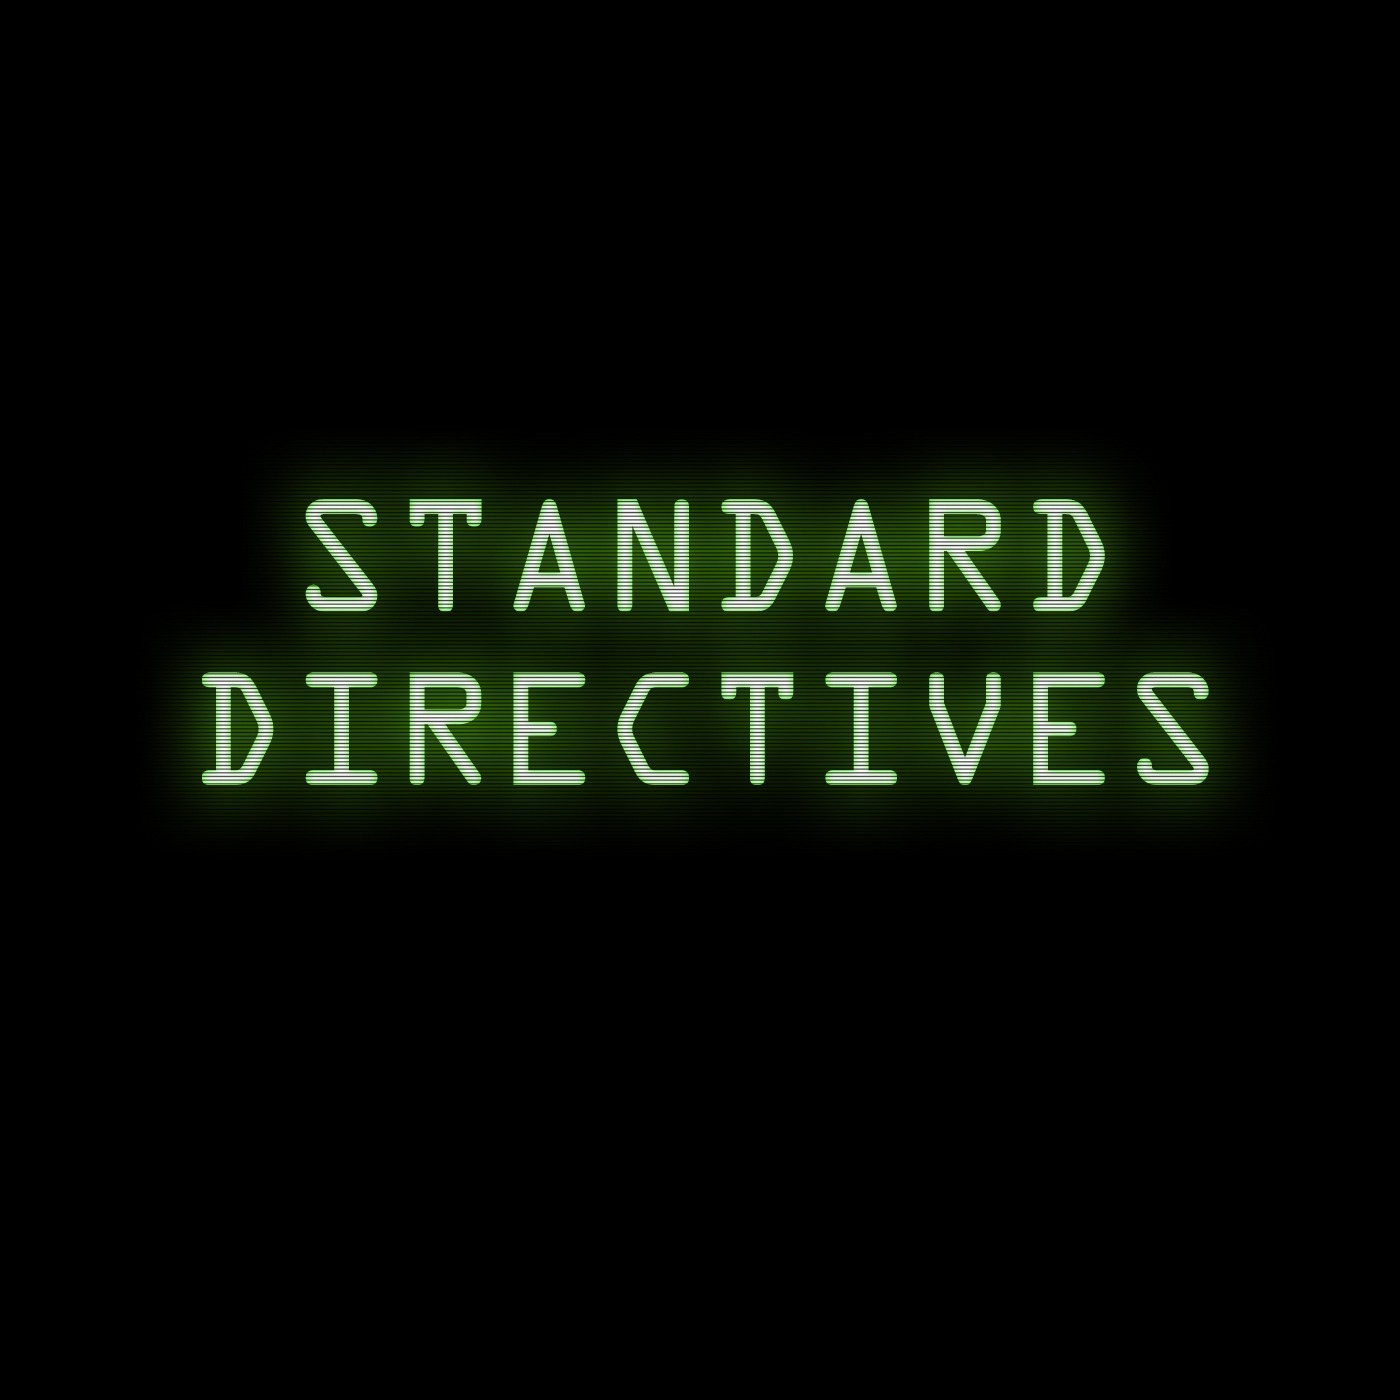 Standard Directive 006: Do An Audit